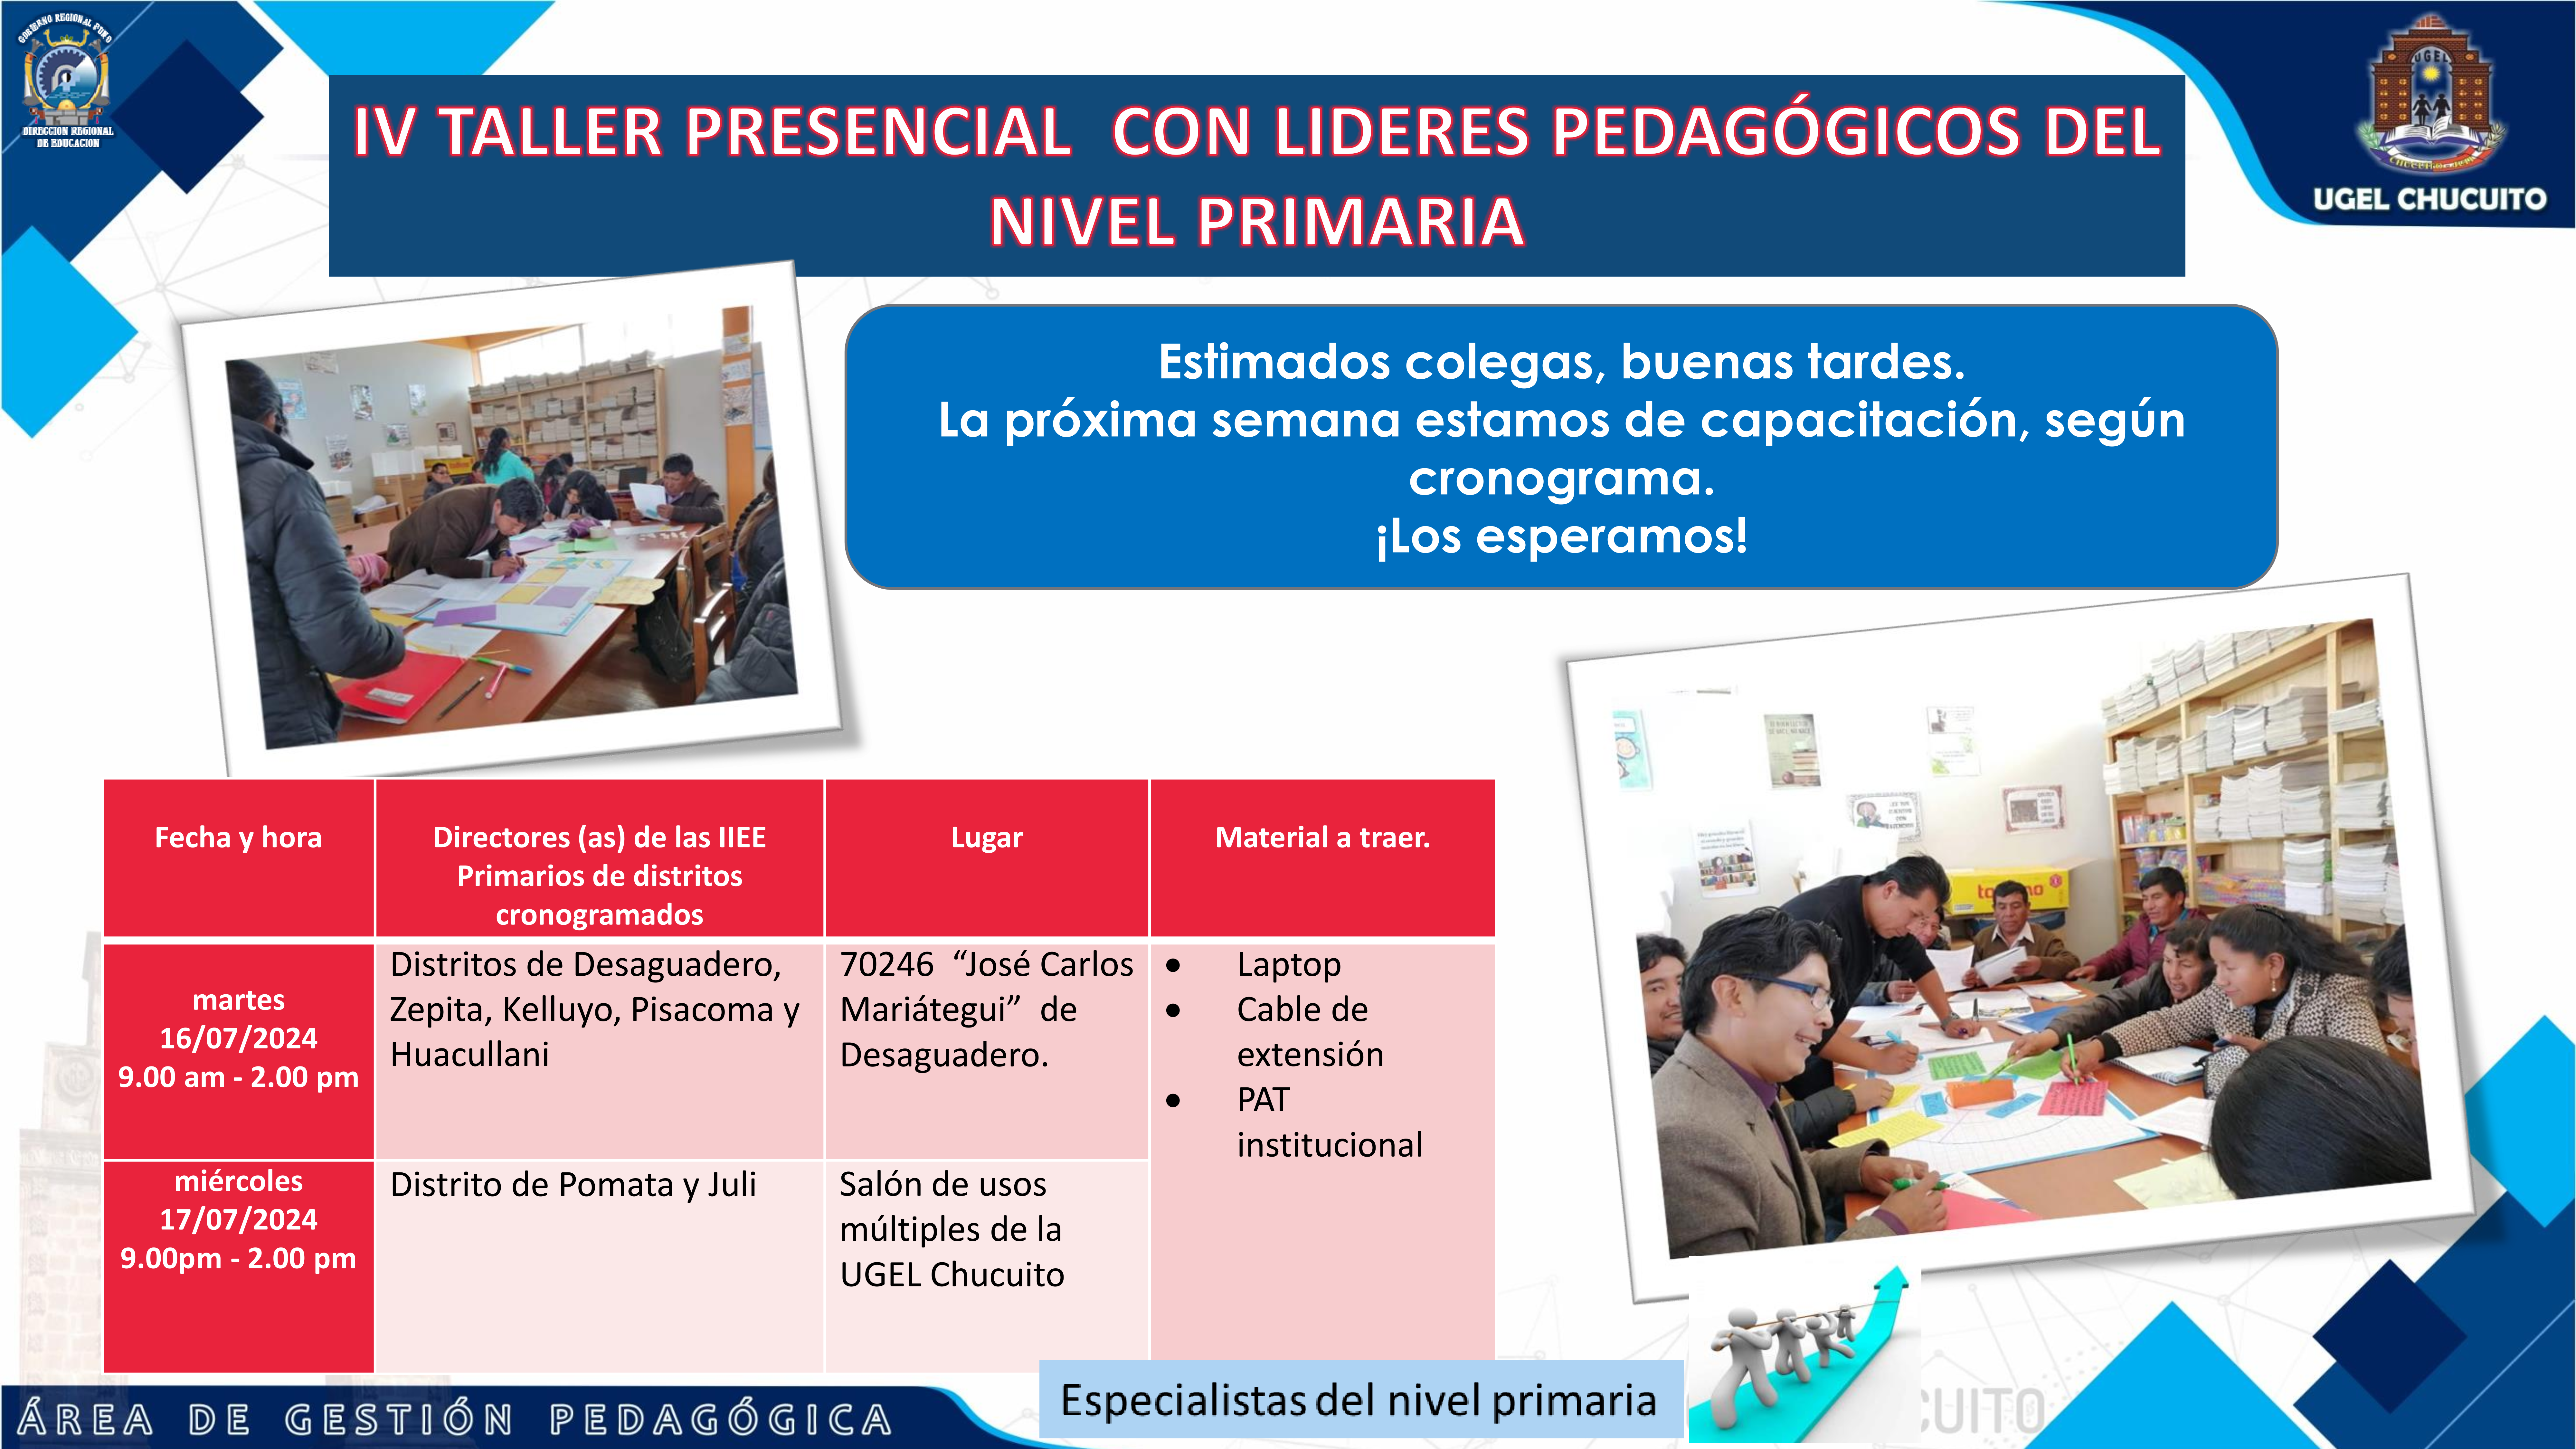 IV TALLER PRESENCIAL CON LÍDERES PEDAGÓGICOS DEL NIVEL PRIMARIA.